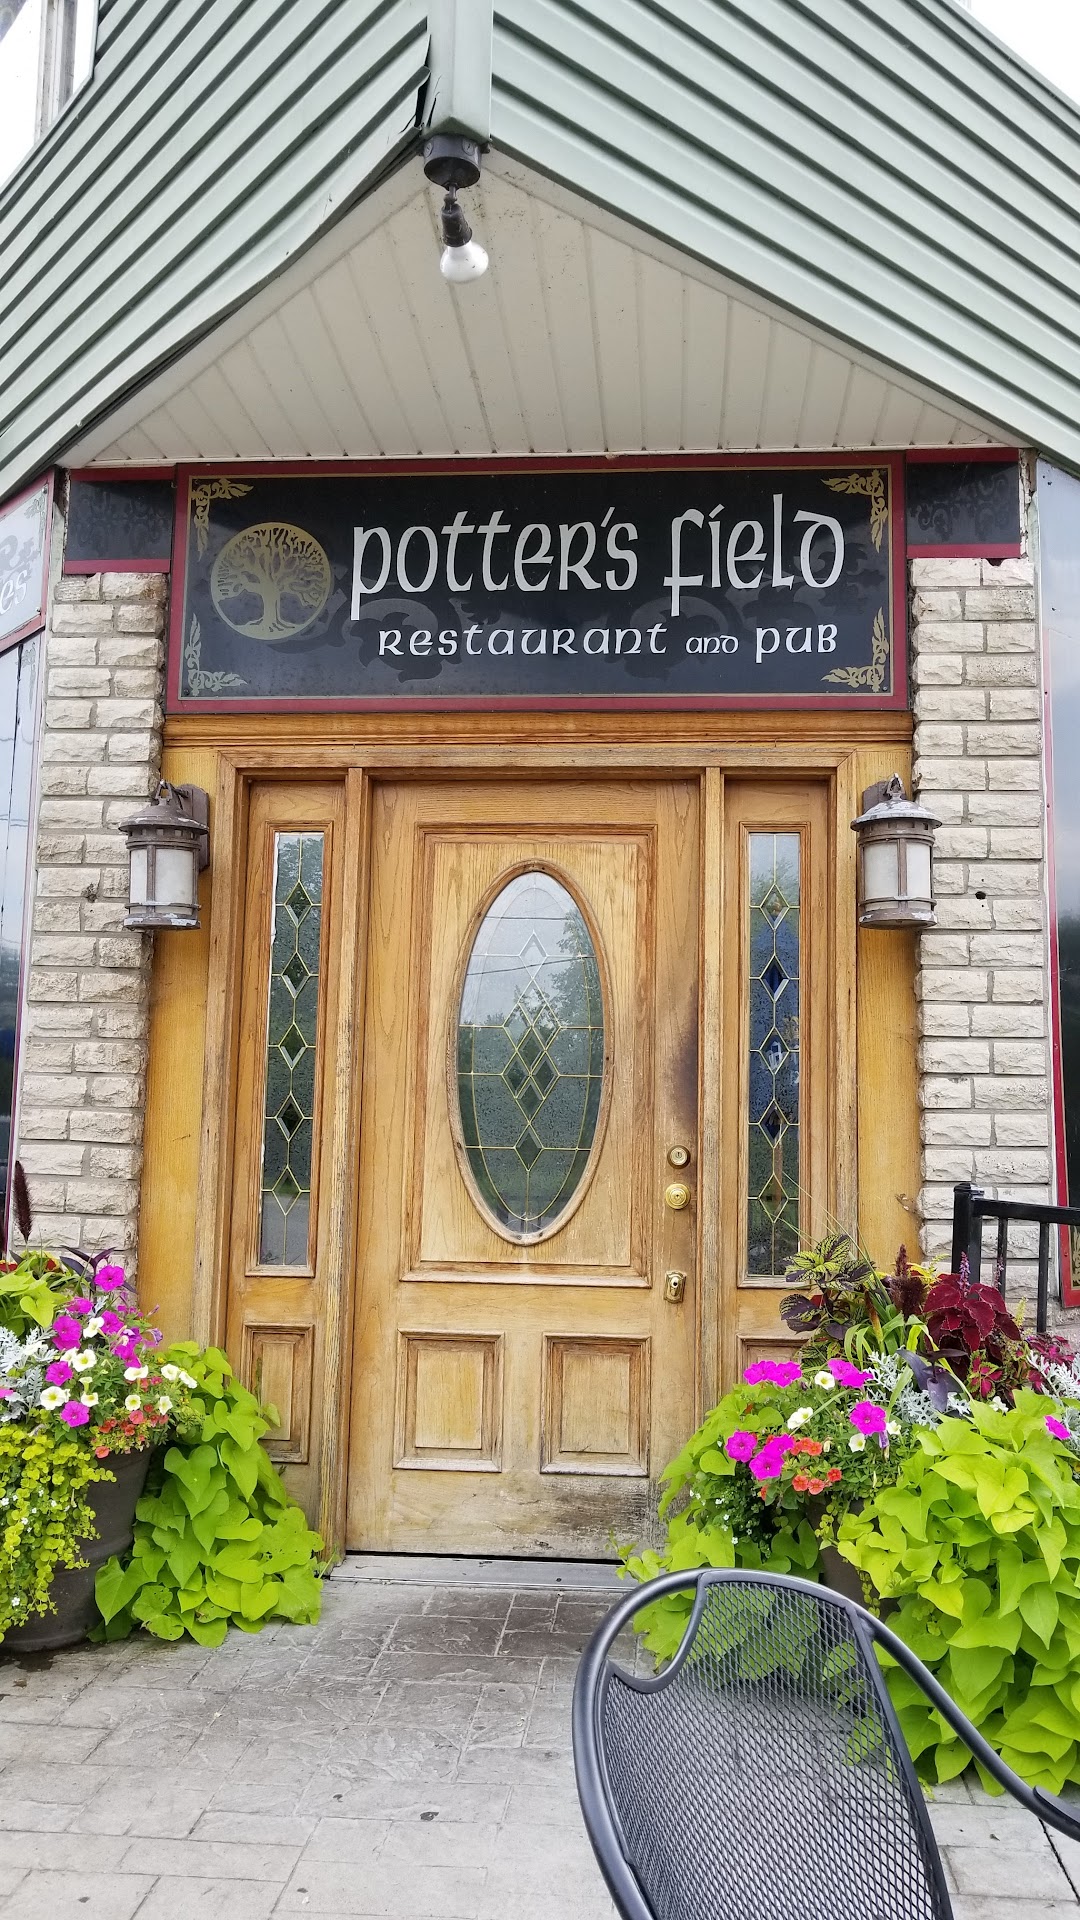 Potters Field Restaurant & Pub